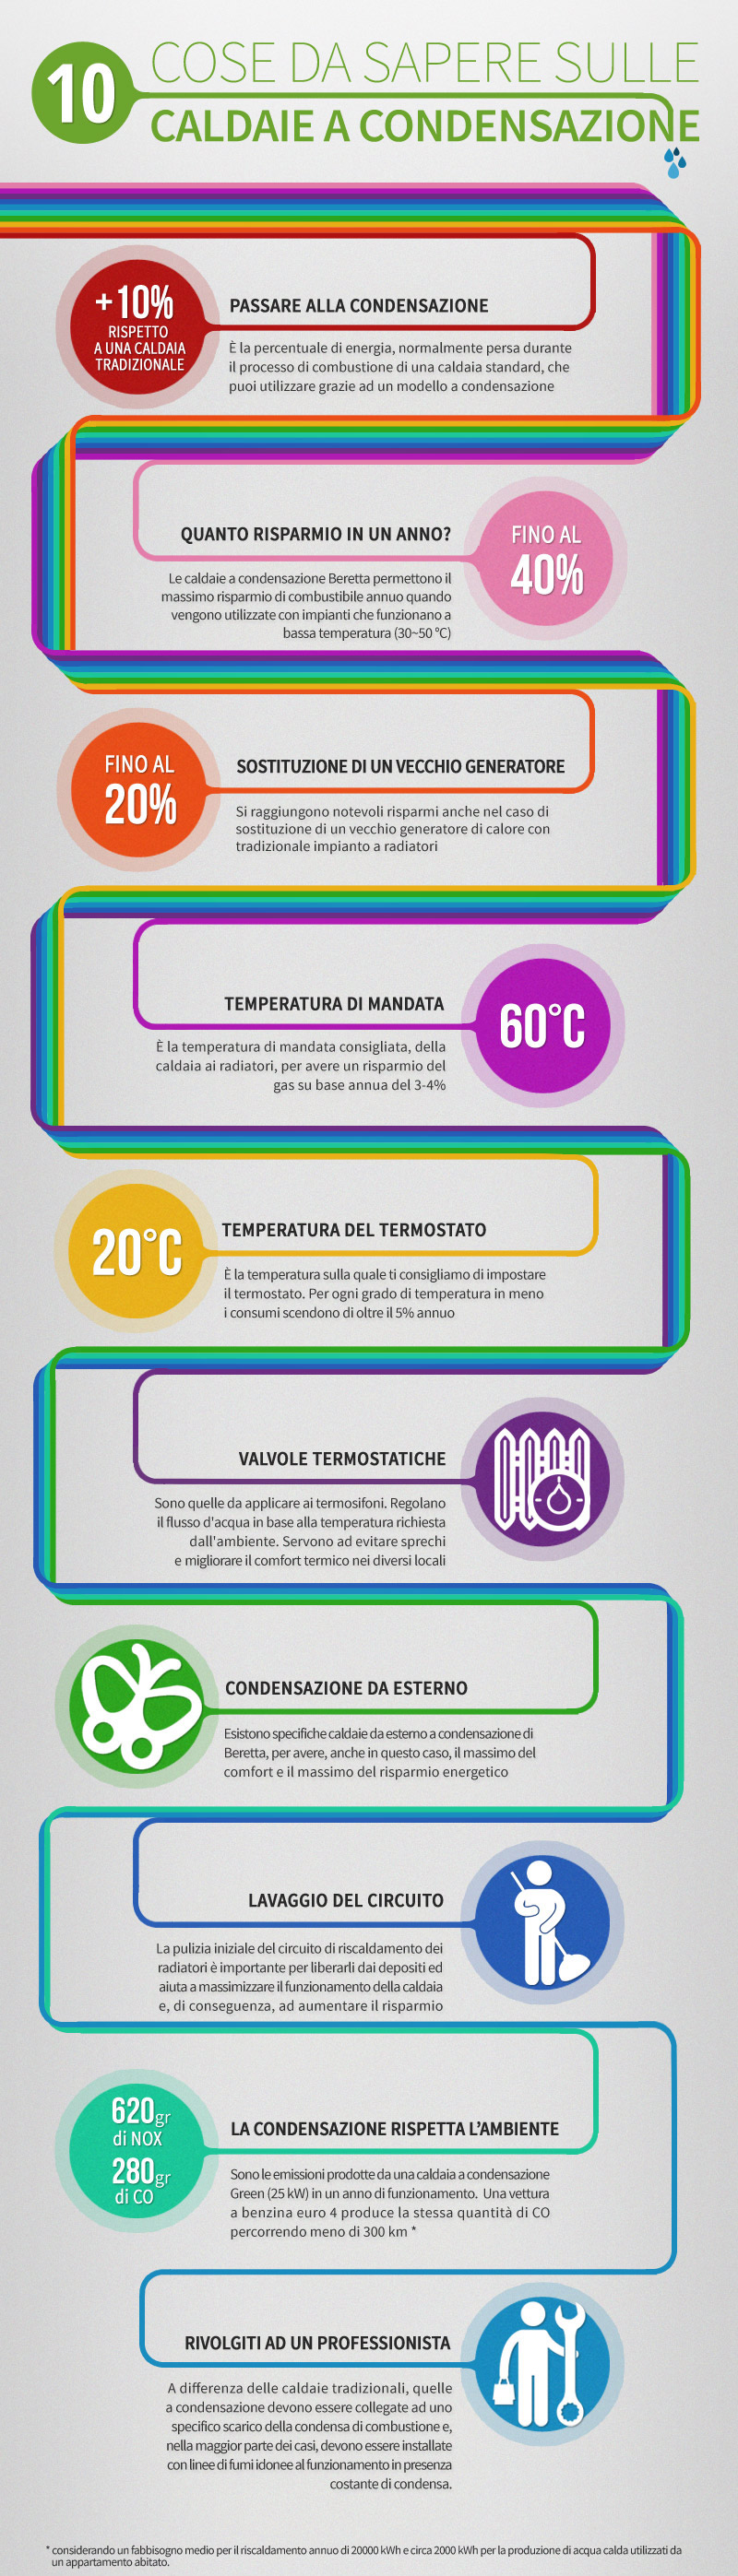 10 cose da sapere sulla condensazione